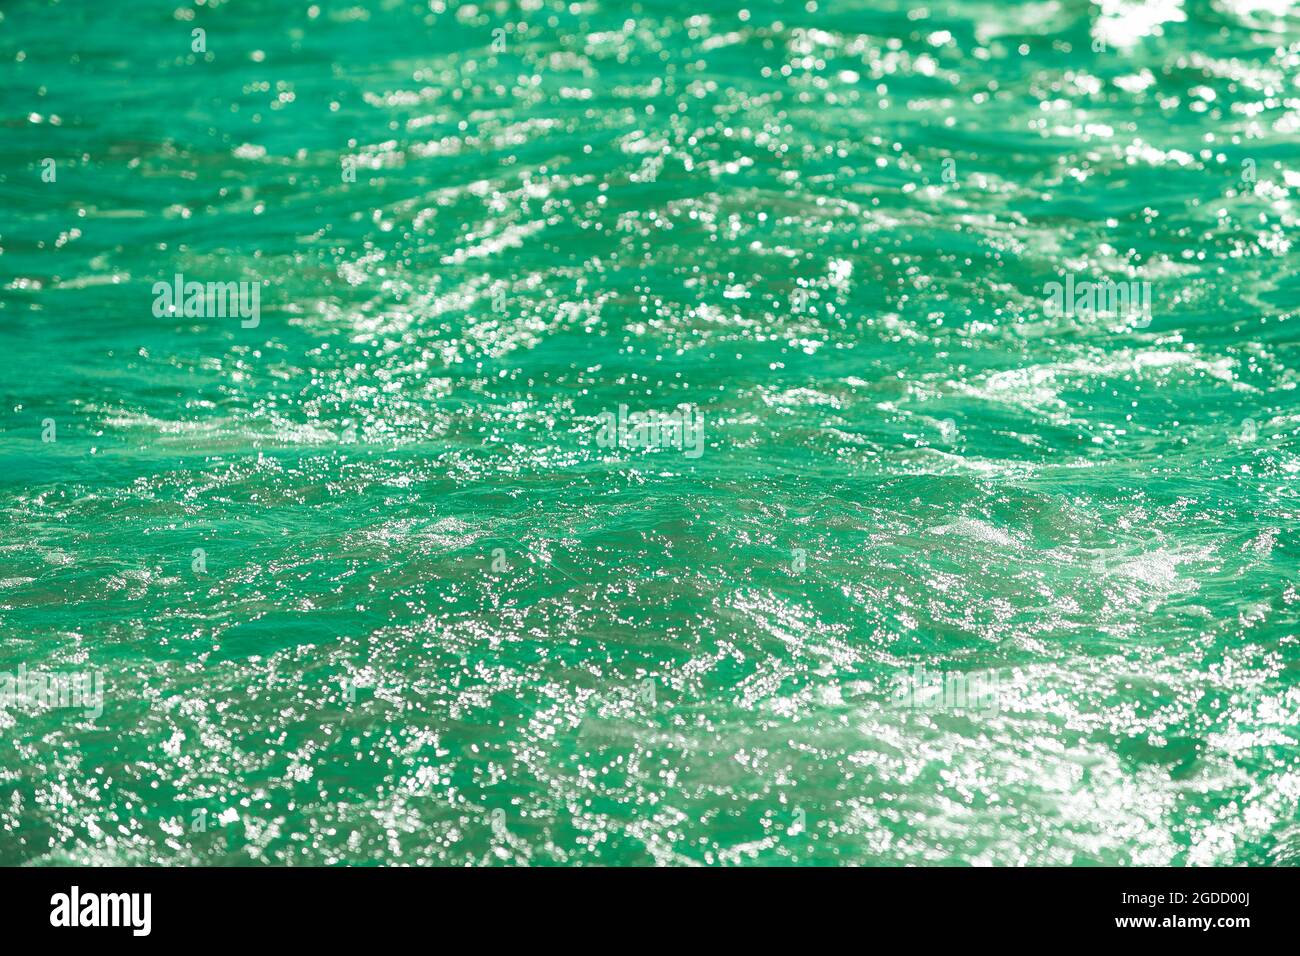 Detail eines Sonnenlichts, das im glitzernden Meer reflektiert wird. Funkelt im Wasser - Hintergrund. Meerwasser mit Sonnenblendung und Welligkeit. Kraftvolle und friedliche Natur c Stockfoto